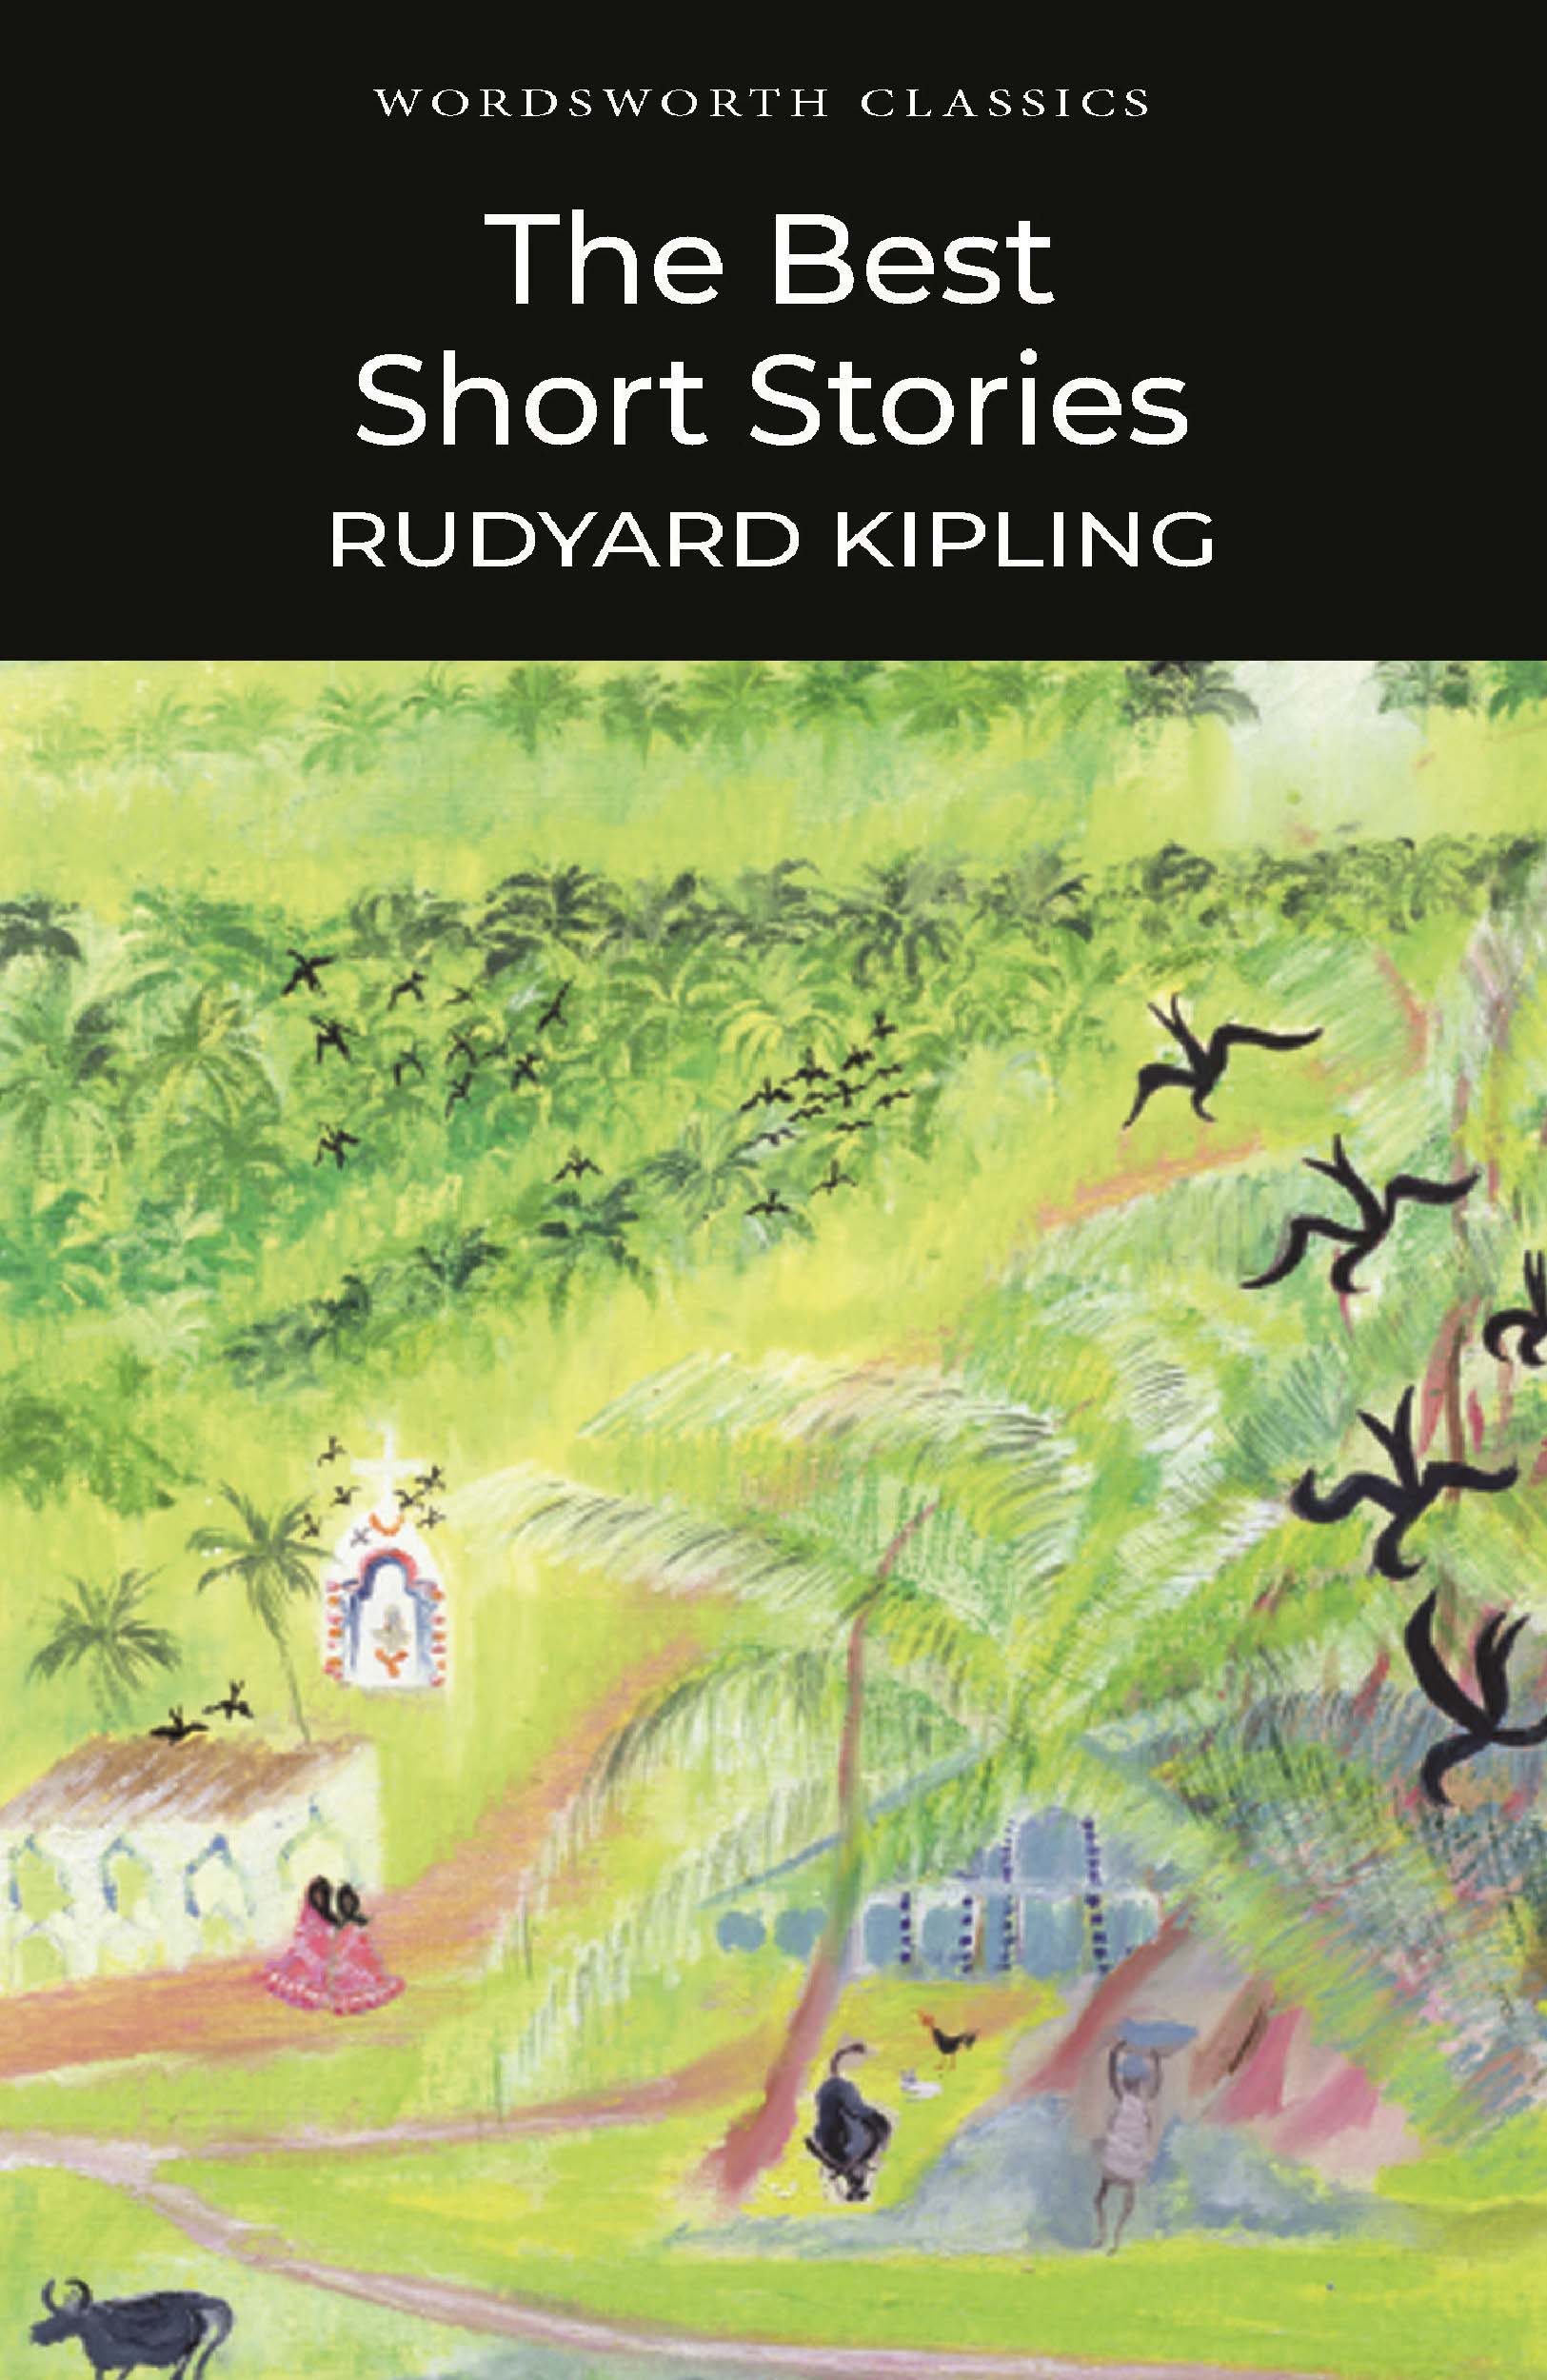 The Best Short Stories - Rudyard Kipling